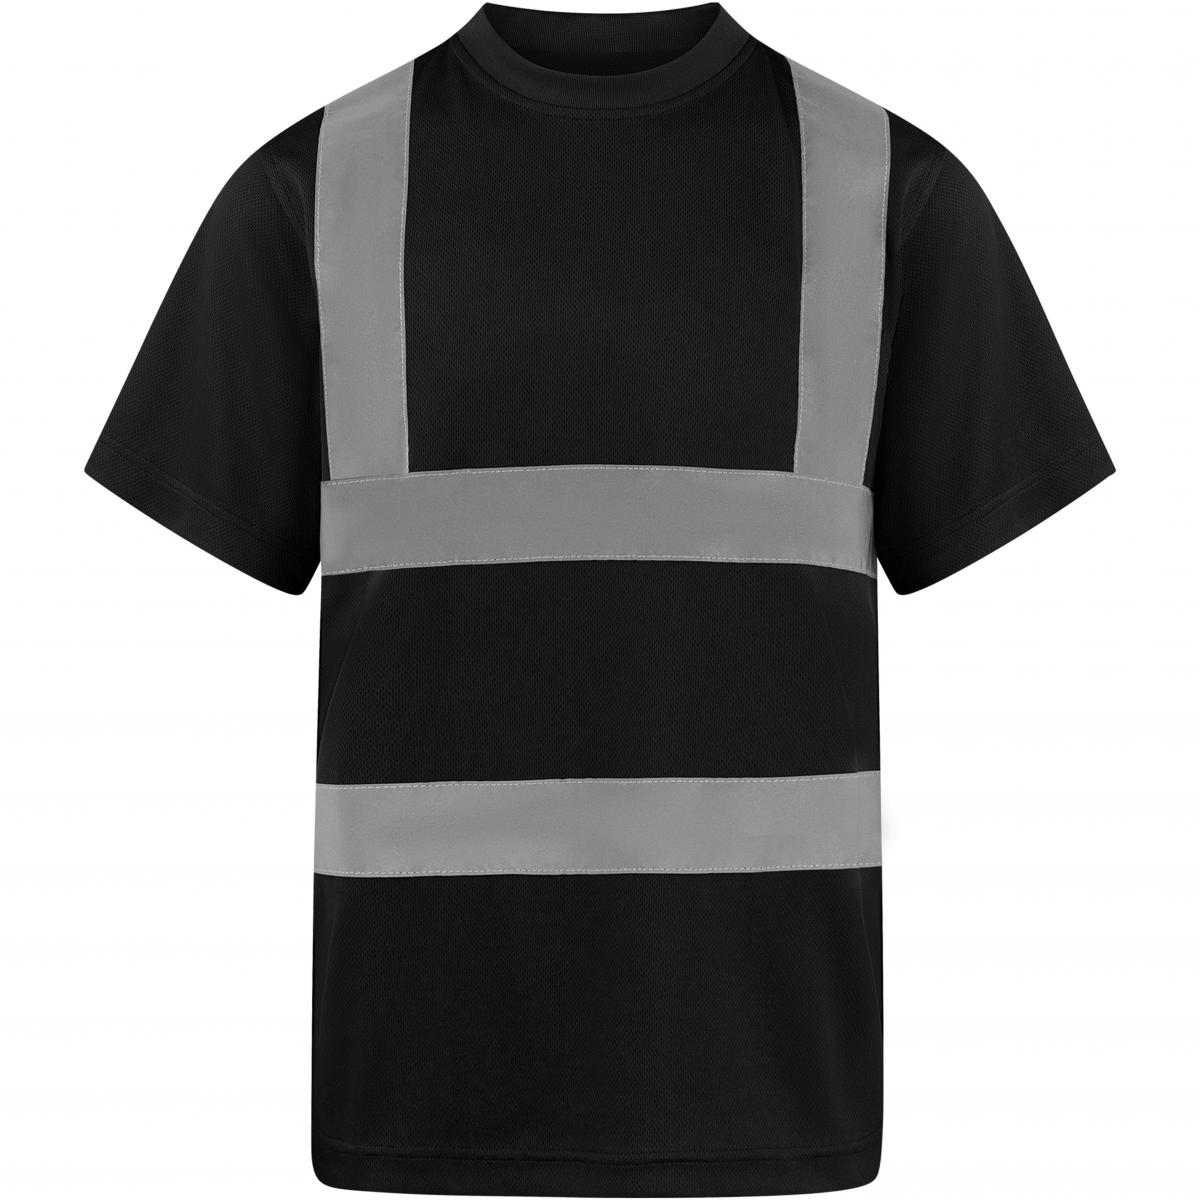 Hersteller: Korntex Herstellernummer: KXS Artikelbezeichnung: Herren Hi-Viz Workwear Arbeits T-Shirt EN ISO 20471 Farbe: Black